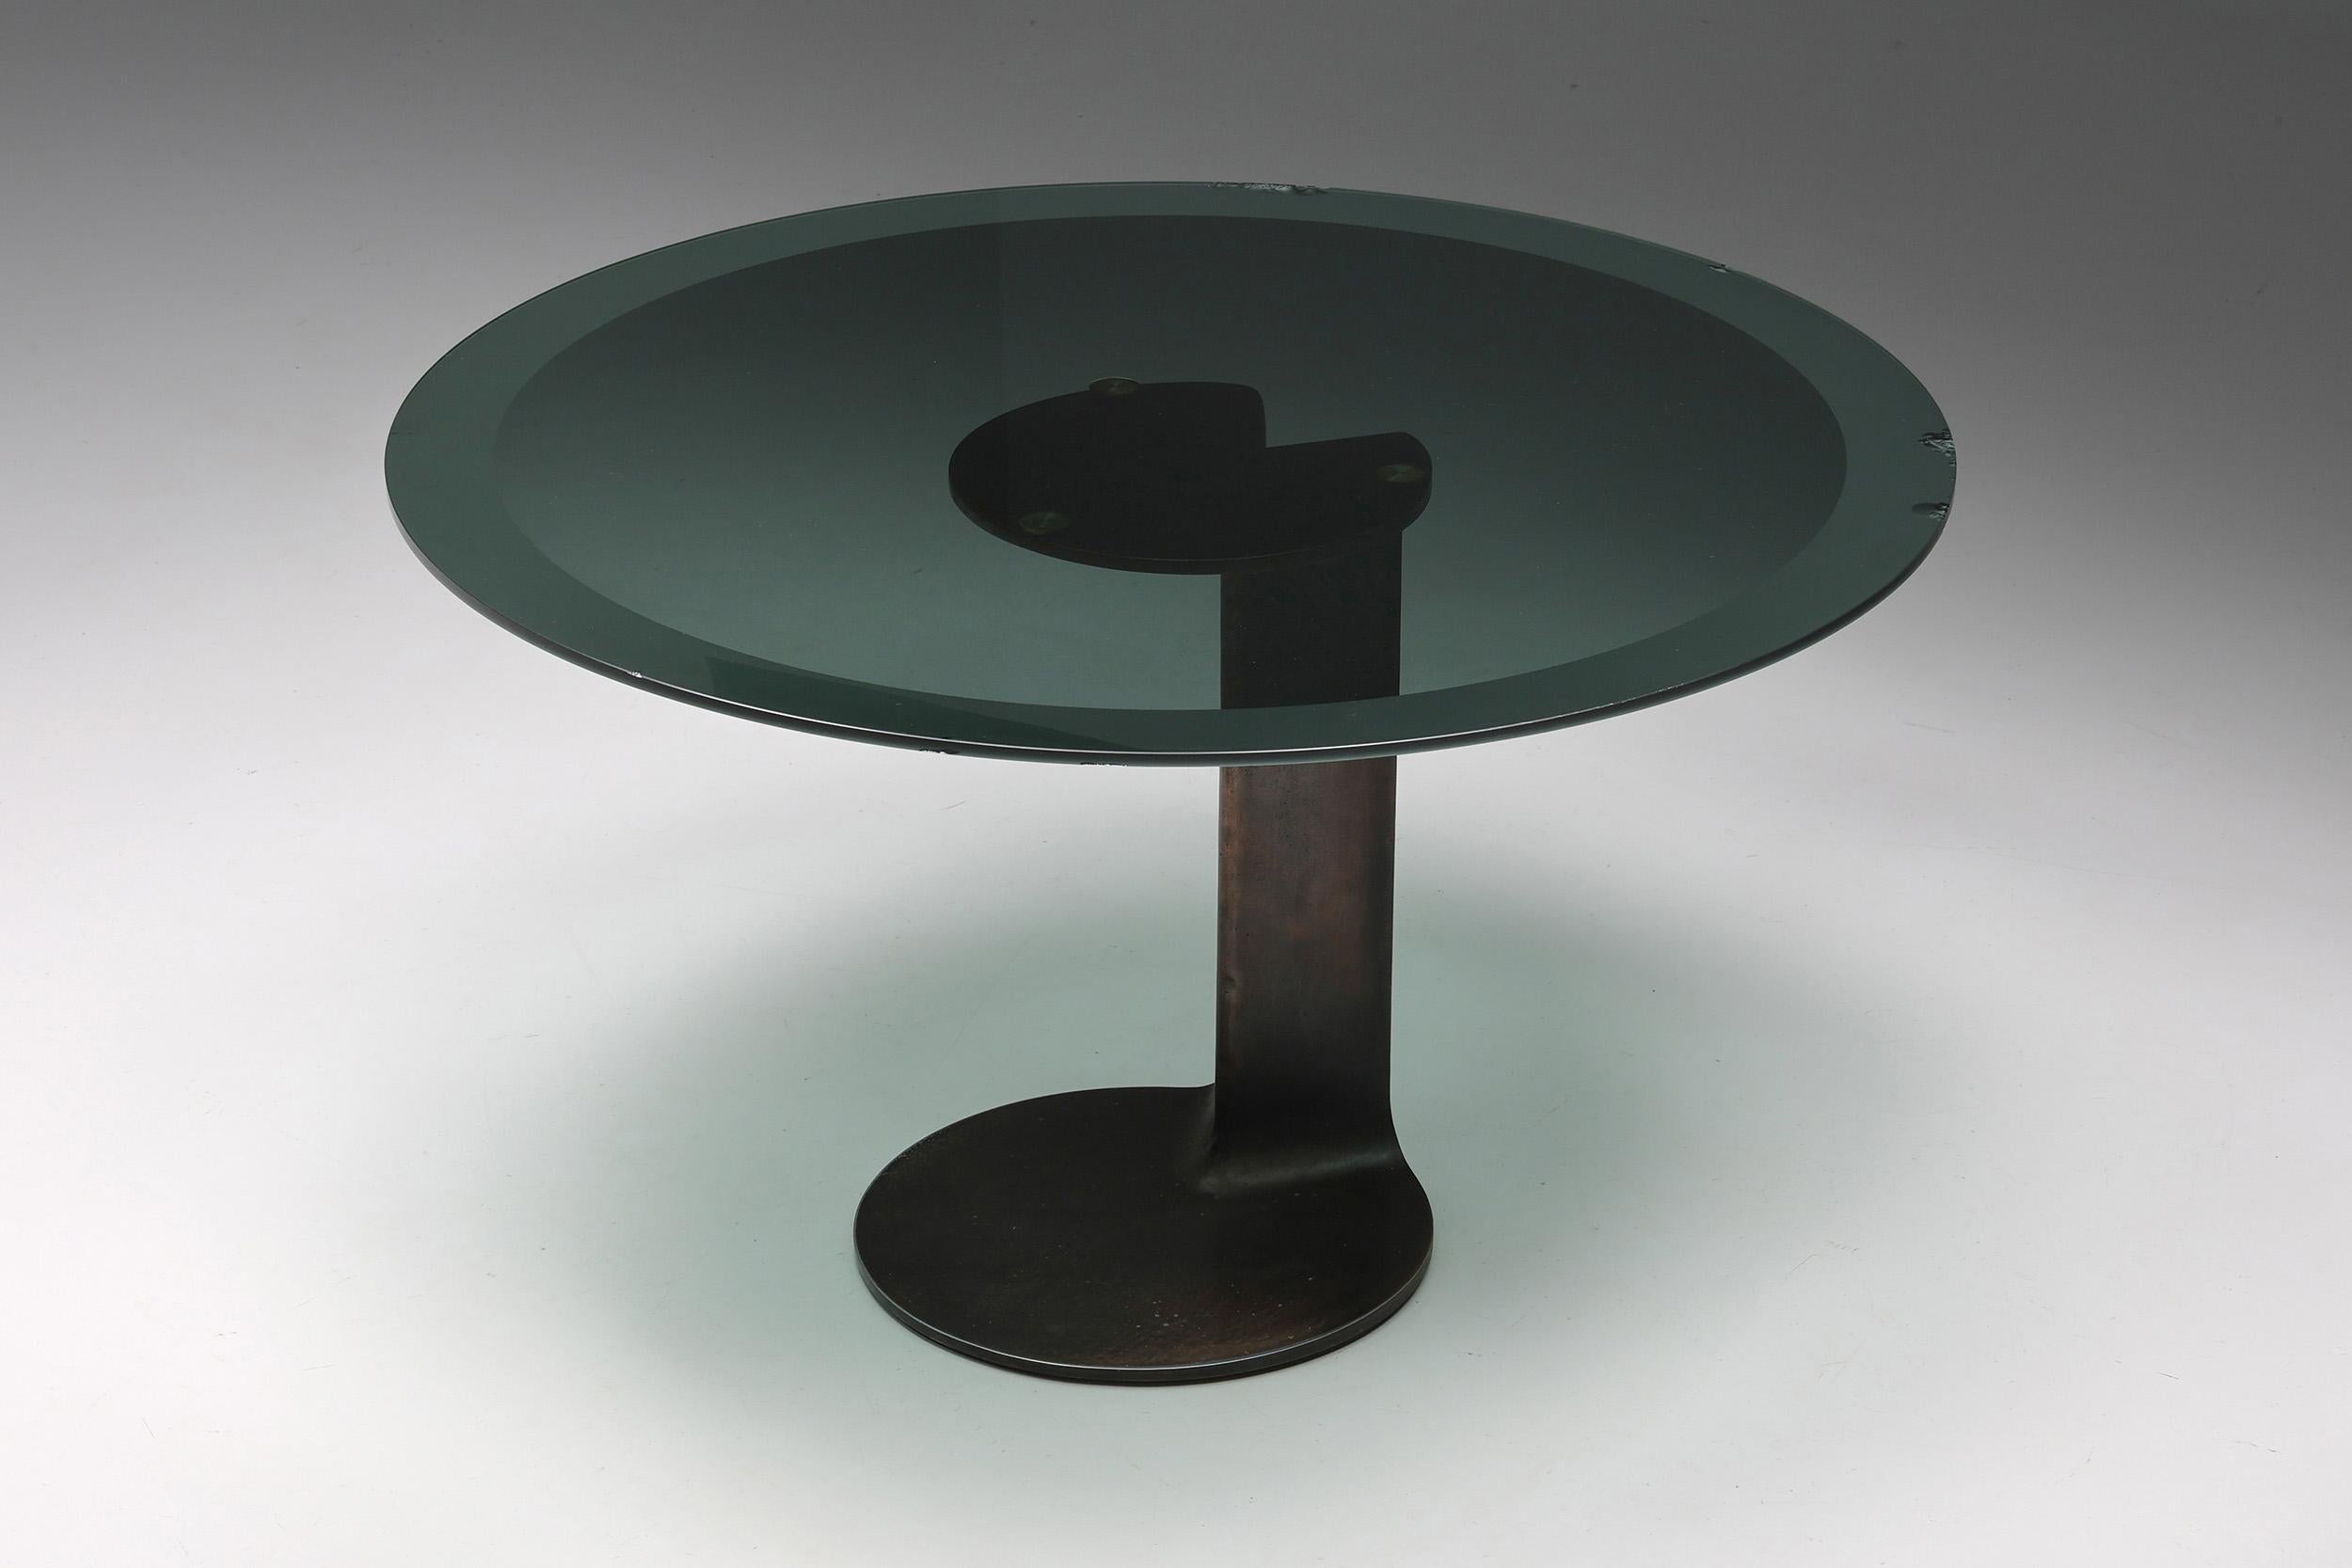 TL59; Esstisch; rund; Bronze; Glas; Rauchglas; Afra & Tobia Scarpa; Poggi; 1975; Italien; Italienisches Design; Post-Modern; 
 
Dieser bemerkenswerte runde Esstisch wurde von Afra & Tobia Scarpa für Poggi im Jahr 1975 entworfen. Es ist ein sehr